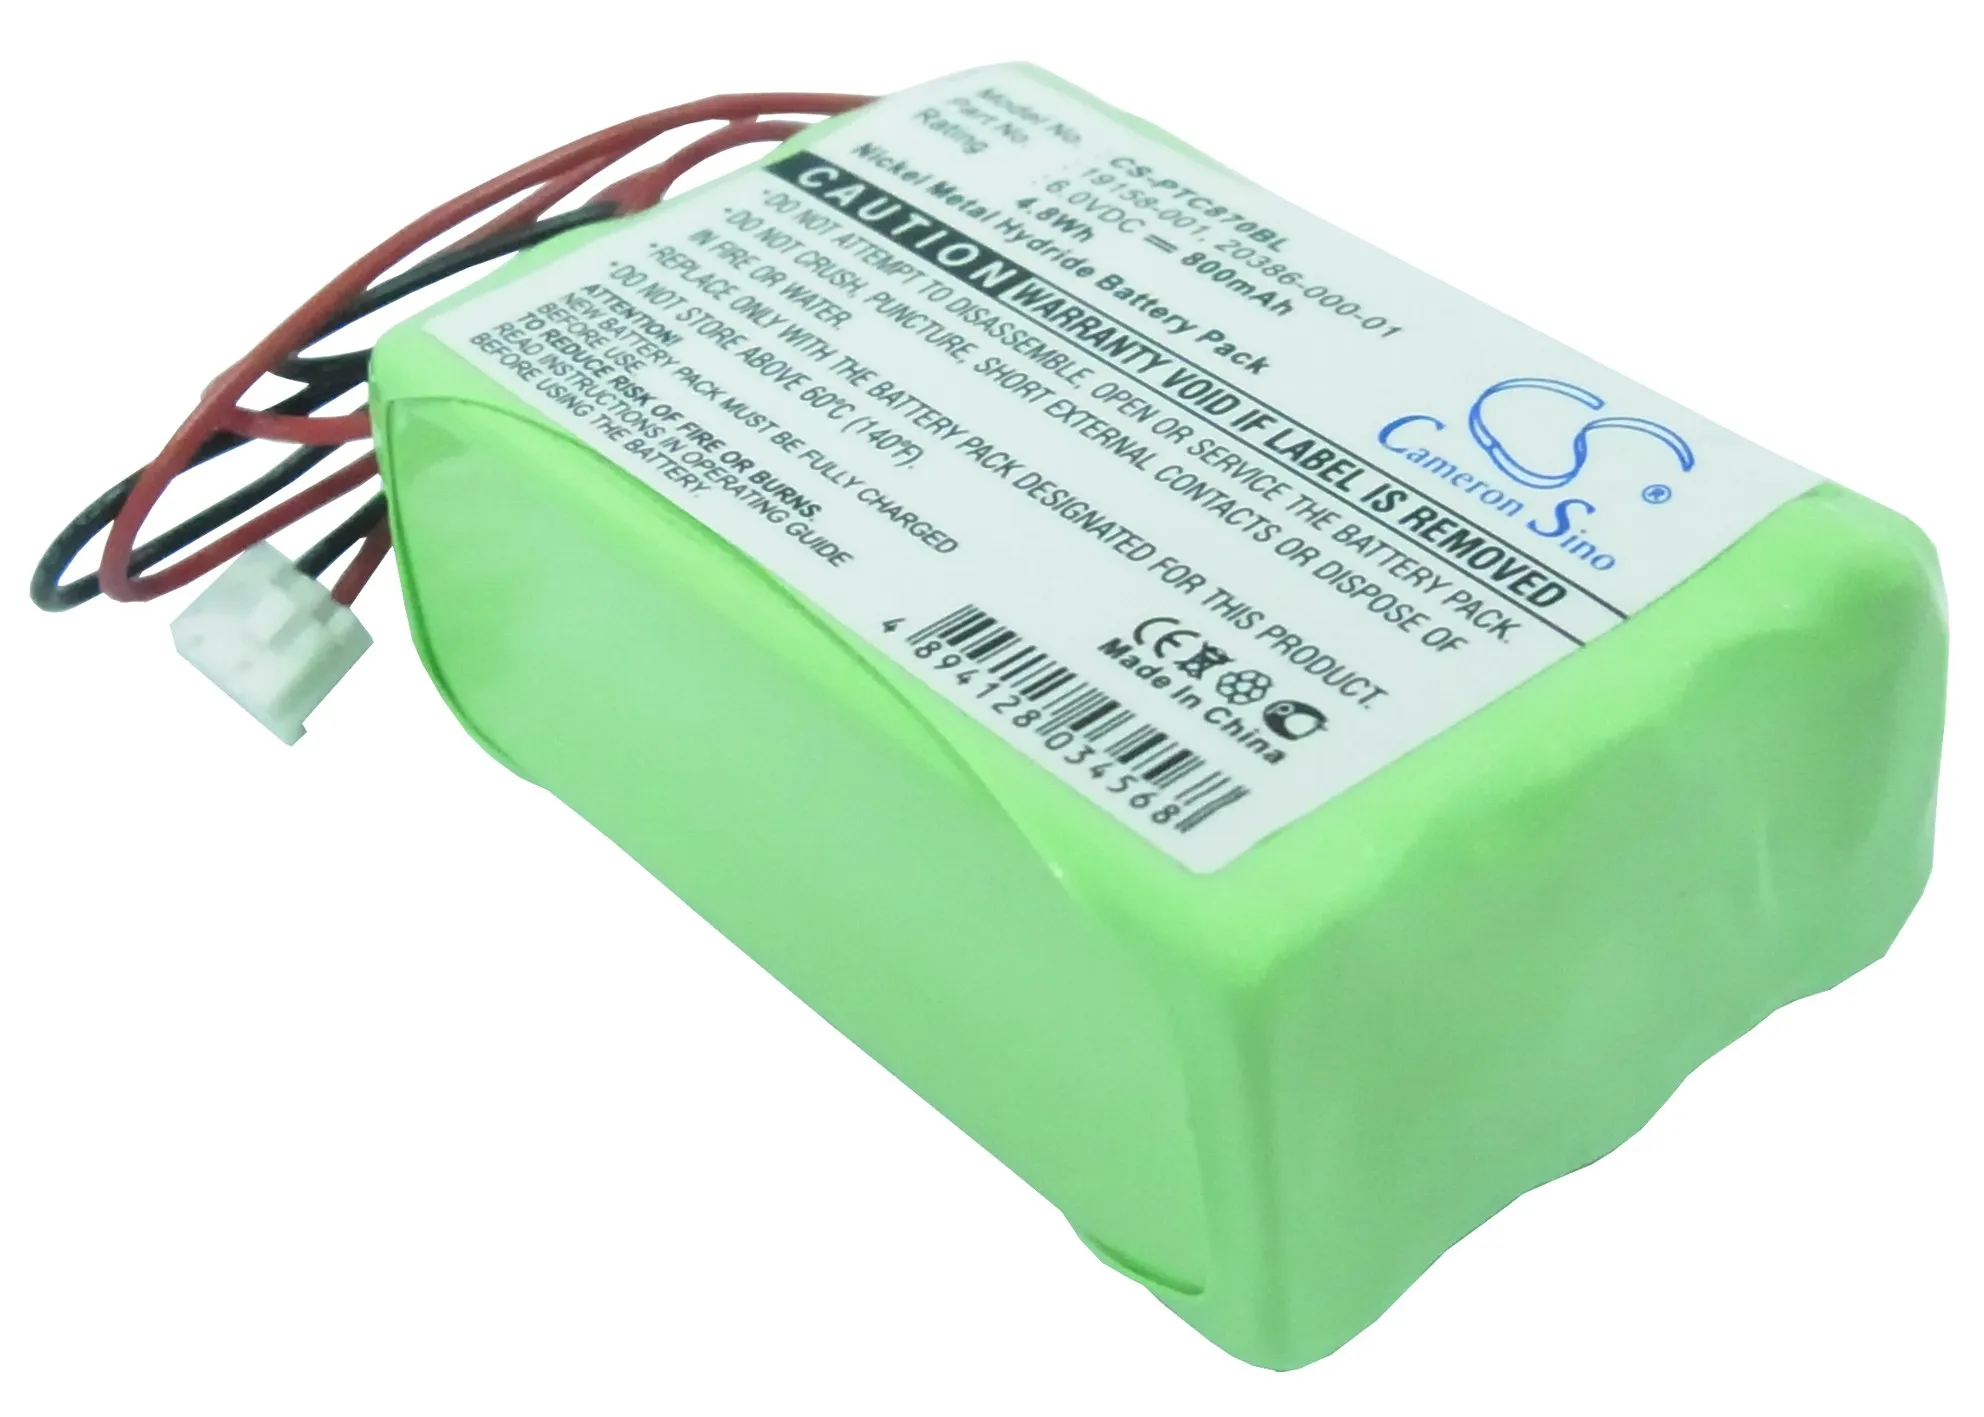 CS 800mAh/4.8 Wh bateria para o Símbolo PTC-870IM, PTC-870IM Terminal 19158-001, 20386-000-01